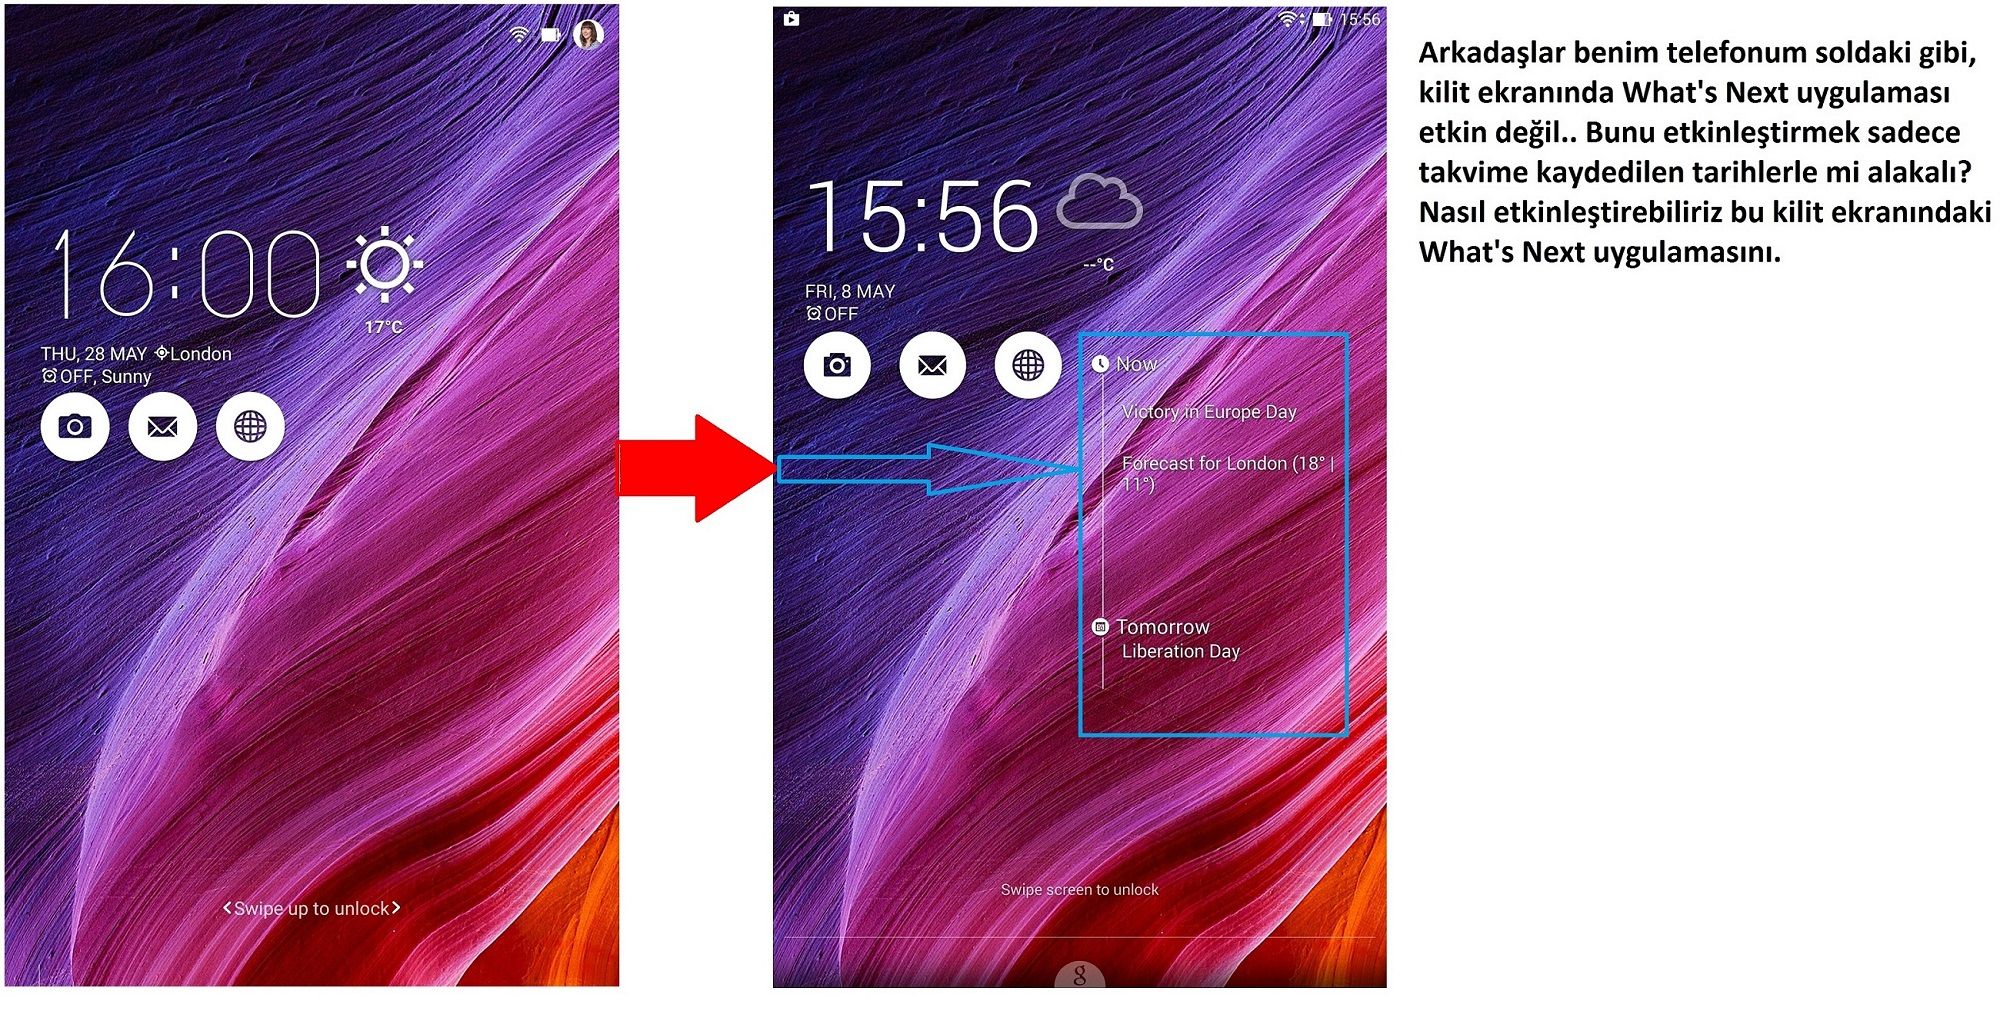 Asus Zenfone 2 What's Next Uygulaması Kilit Ekranında Etkin Olmama Sorunu |  Technopat Sosyal